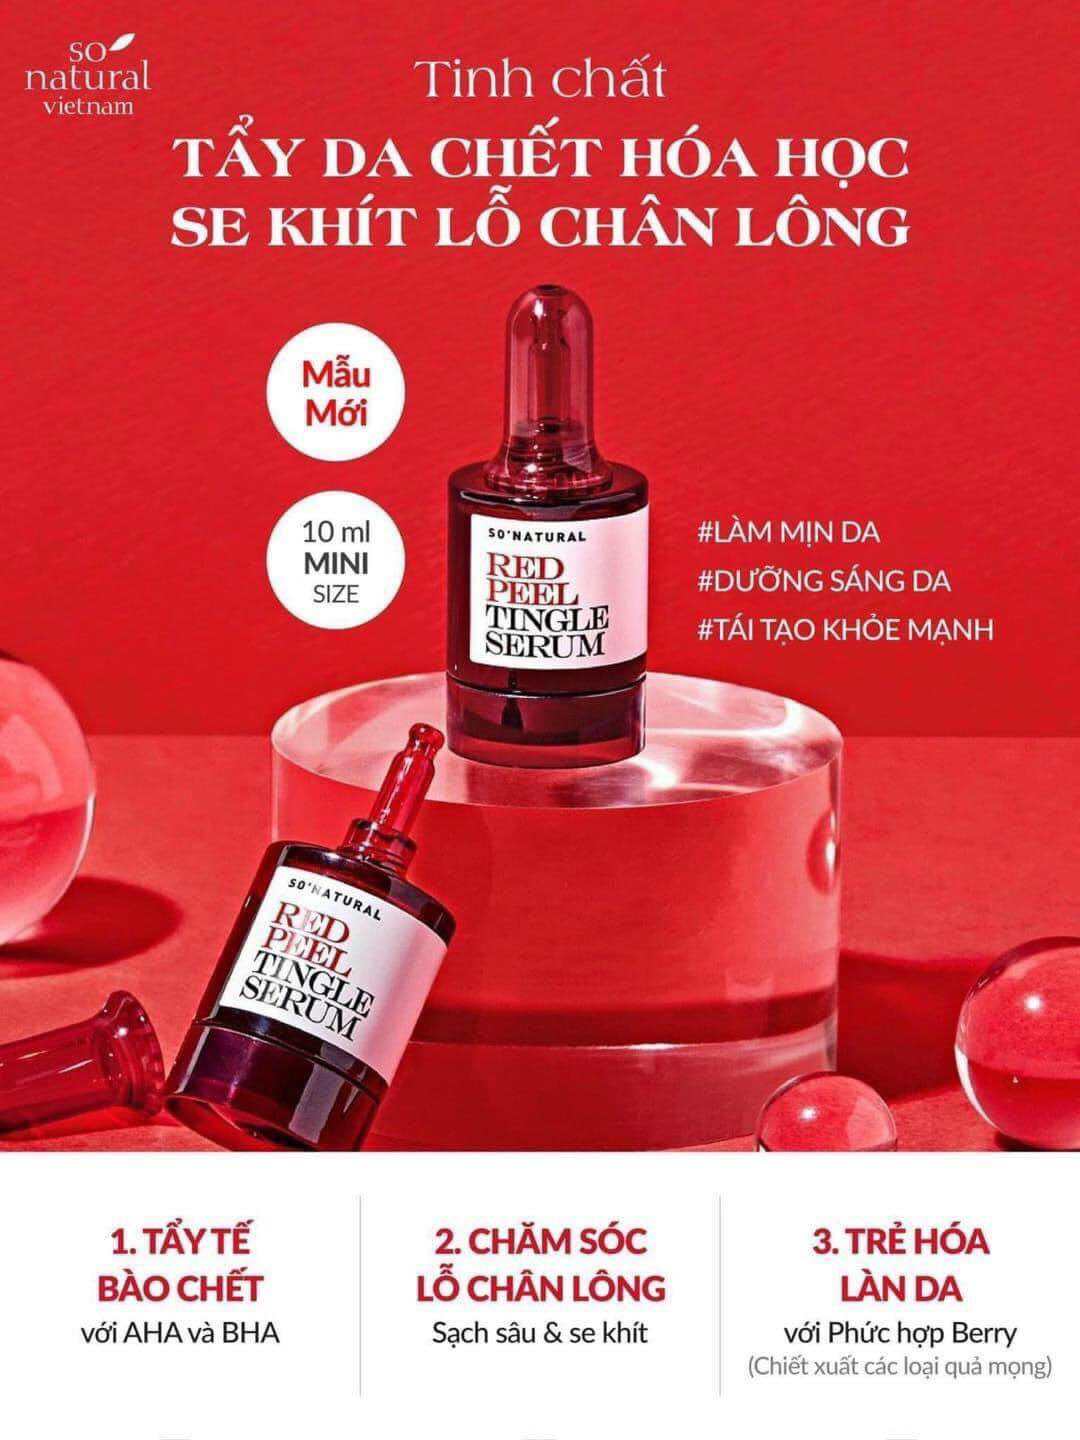 Peel da mặt sinh học red peel tingle serum 10ml Hàn Quốc tái tạo phục hồi